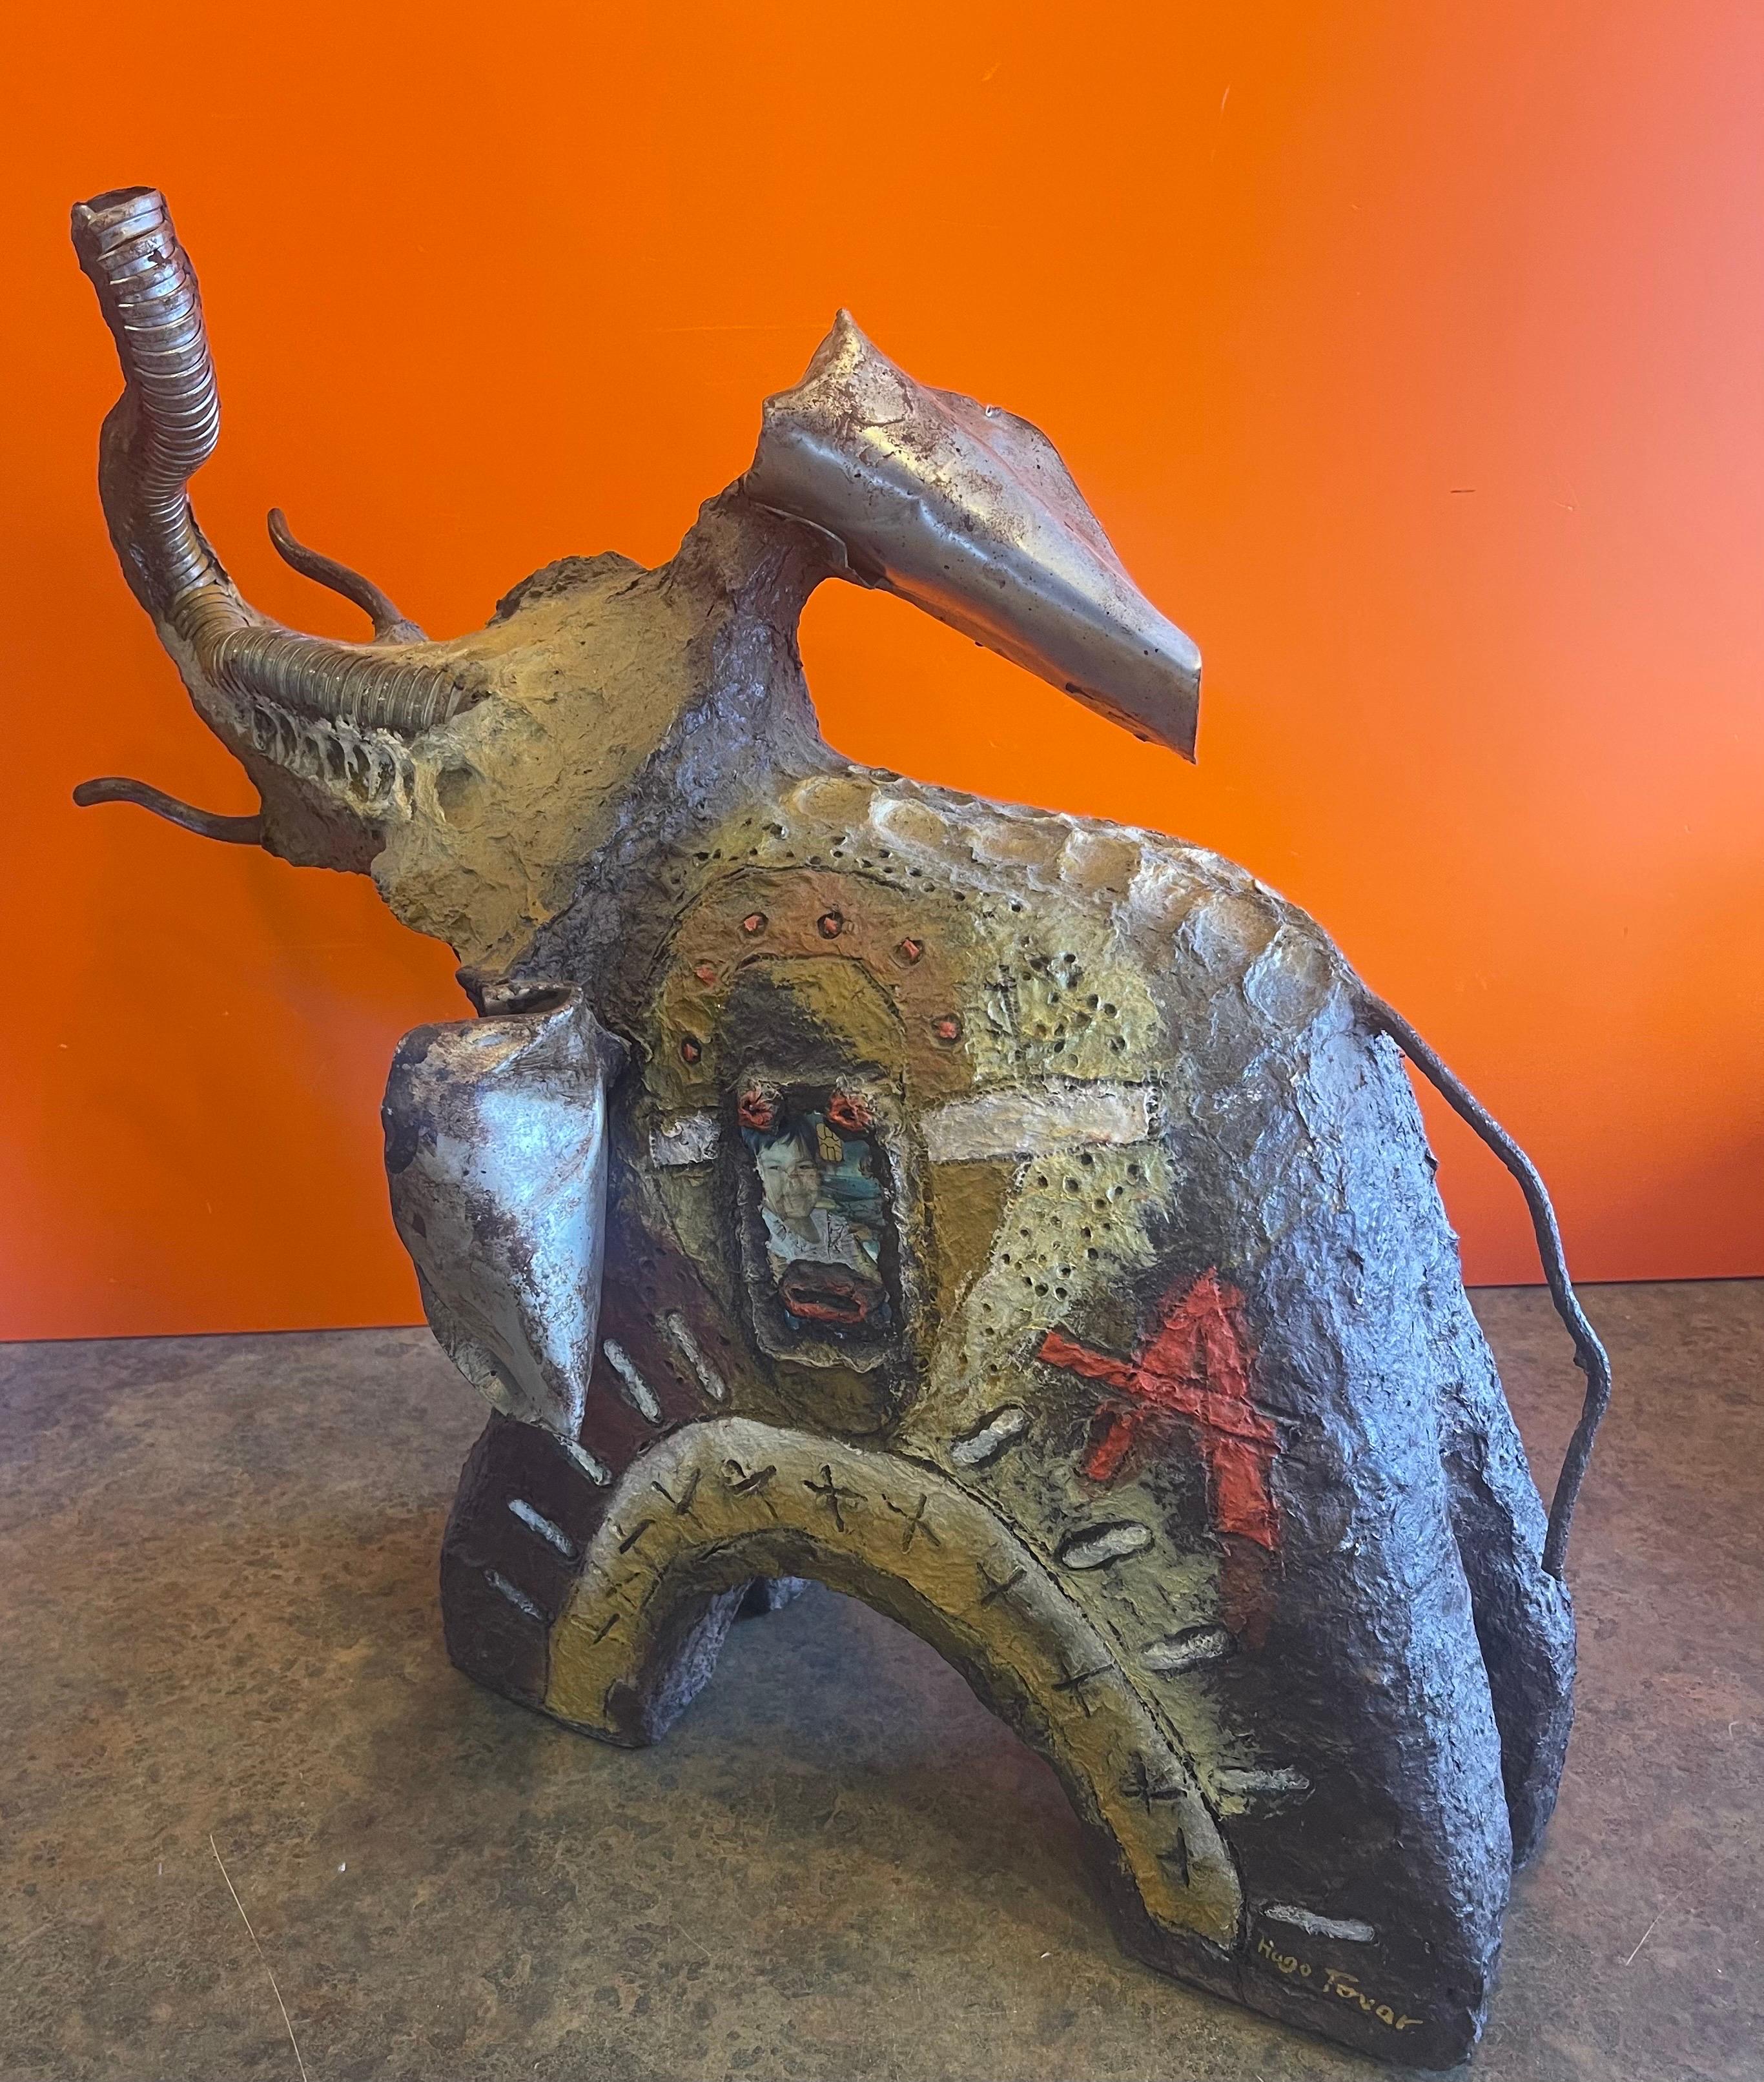 Handgefertigte modernistische Elefanten-Assemblage-Skulptur von Hugo Tovar aus Mexiko, ca. 2000. Es stellt einen Elefanten mit erhobenem Rüssel dar, der aus recycelten Materialien wie Papier, verschiedenen Gegenständen, Metall, Lacken und